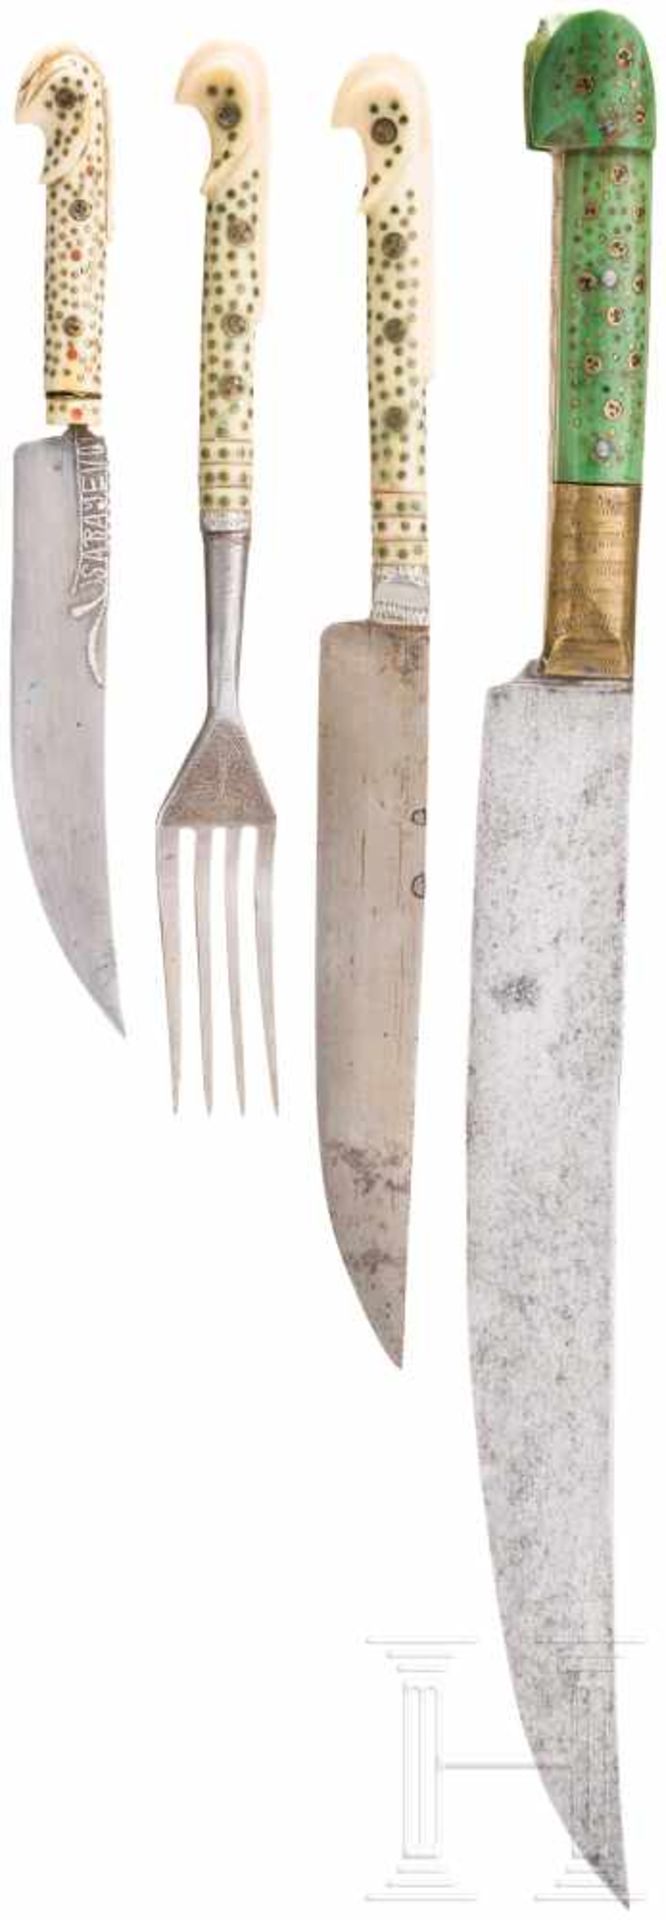 Besteck, Sarajevo, 19. Jhdt.Besteck bestehend aus drei Messern und einer Gabel, silbertauschierte